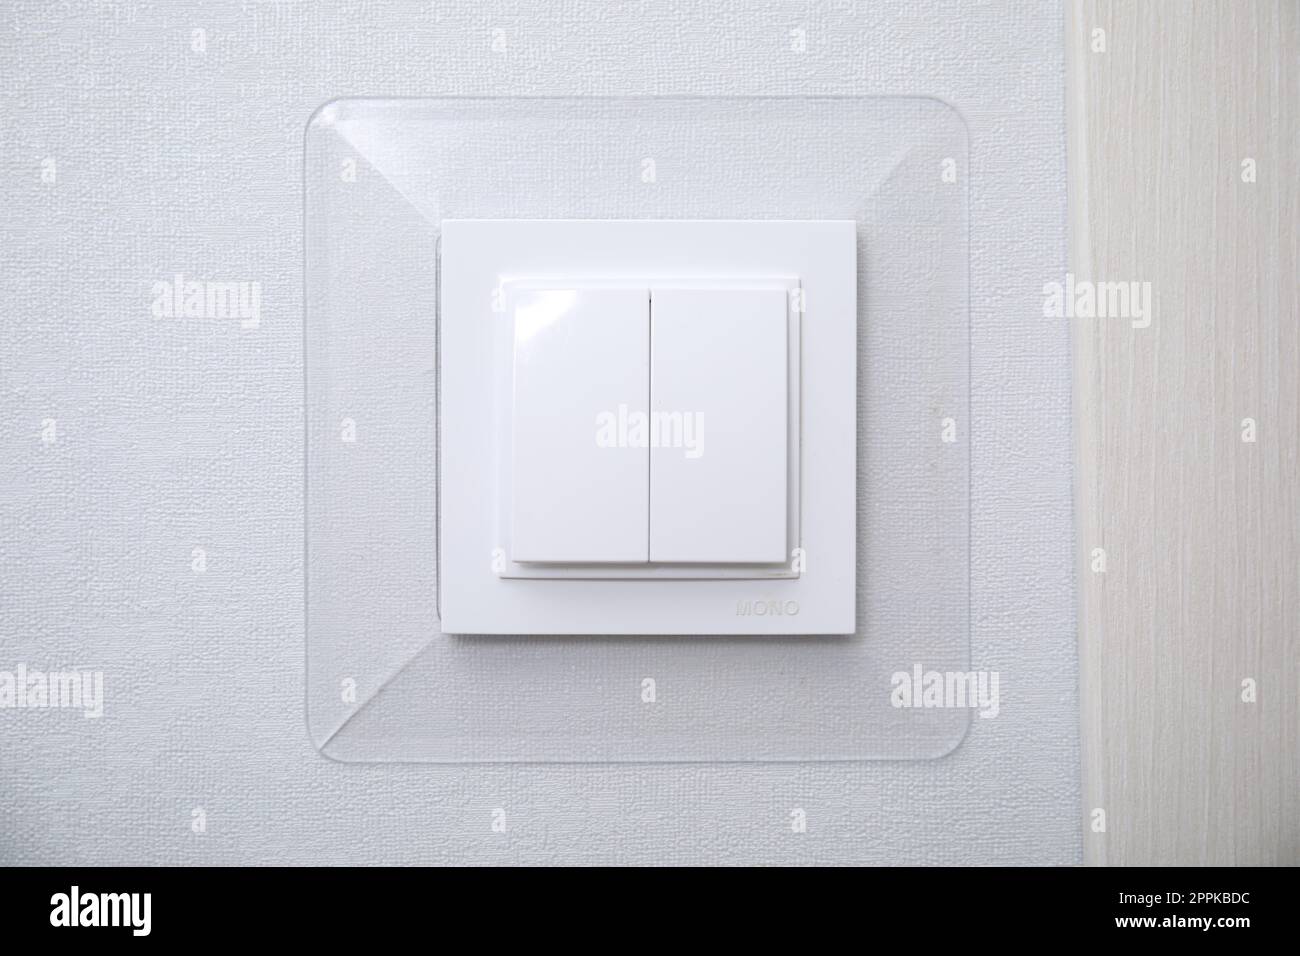 Instalar interruptor de luz fotografías e imágenes de alta resolución -  Alamy